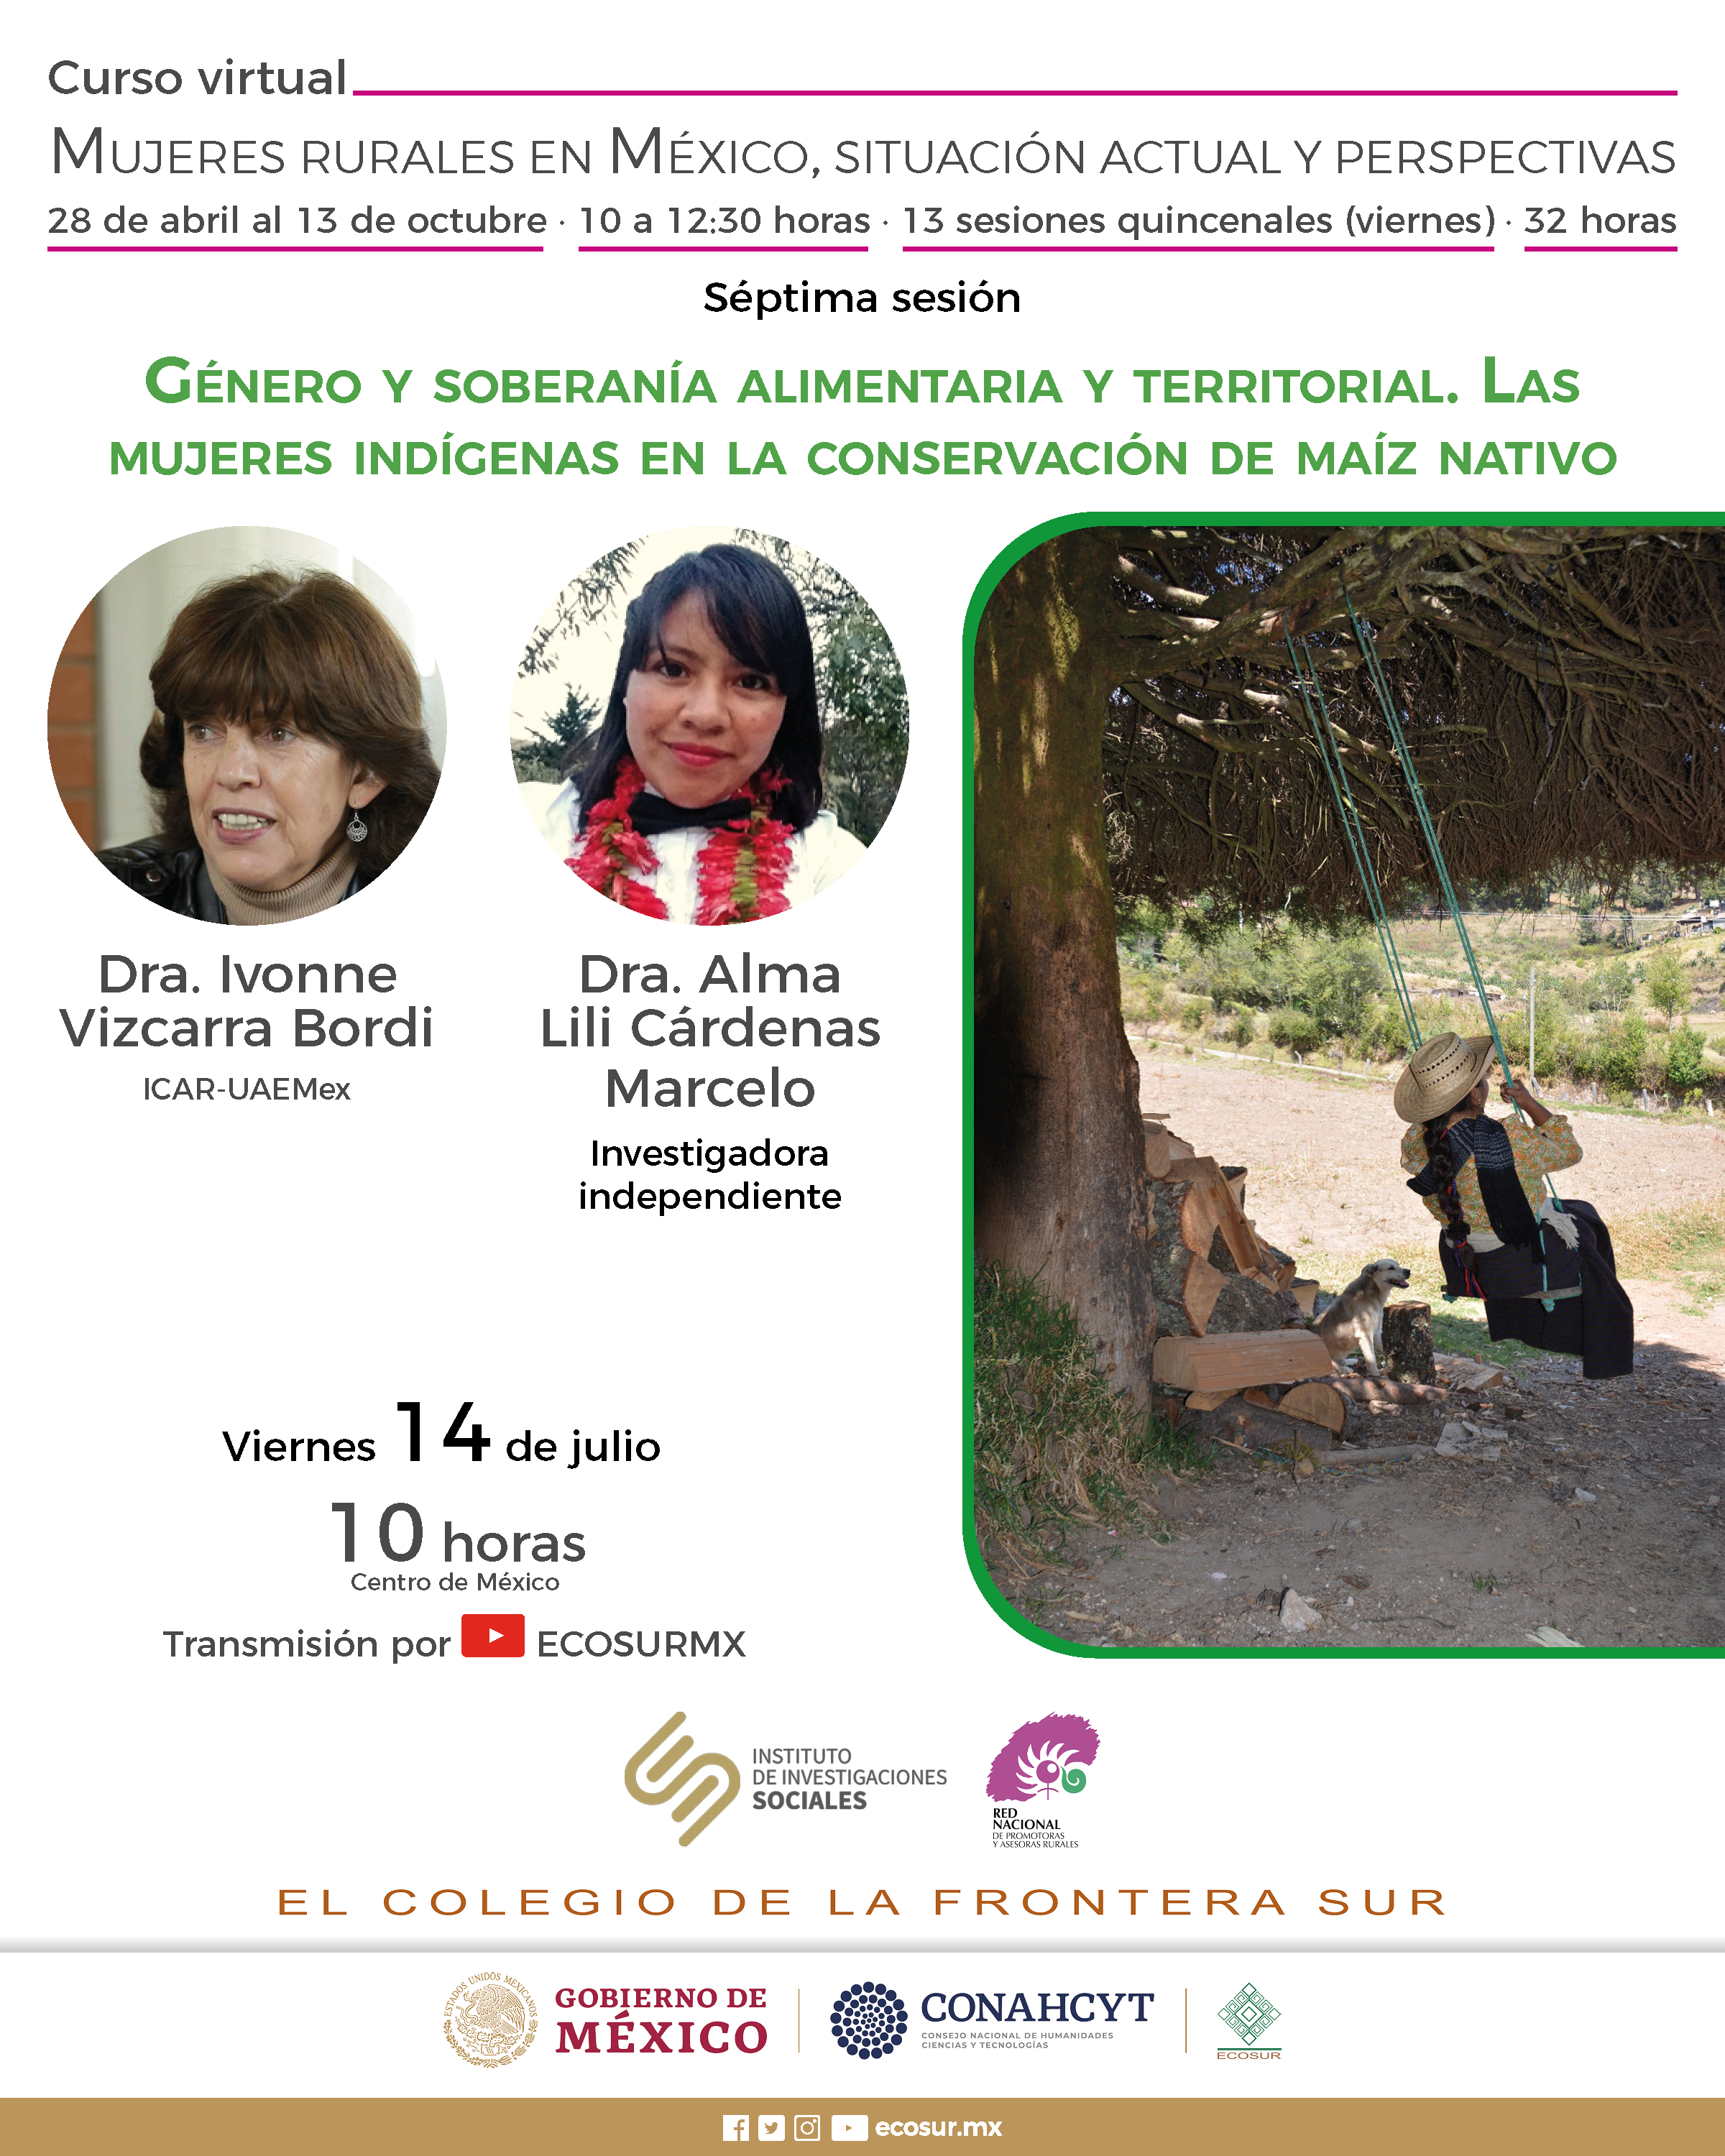 Mujeres rurales en México, situación actual y perspectivas